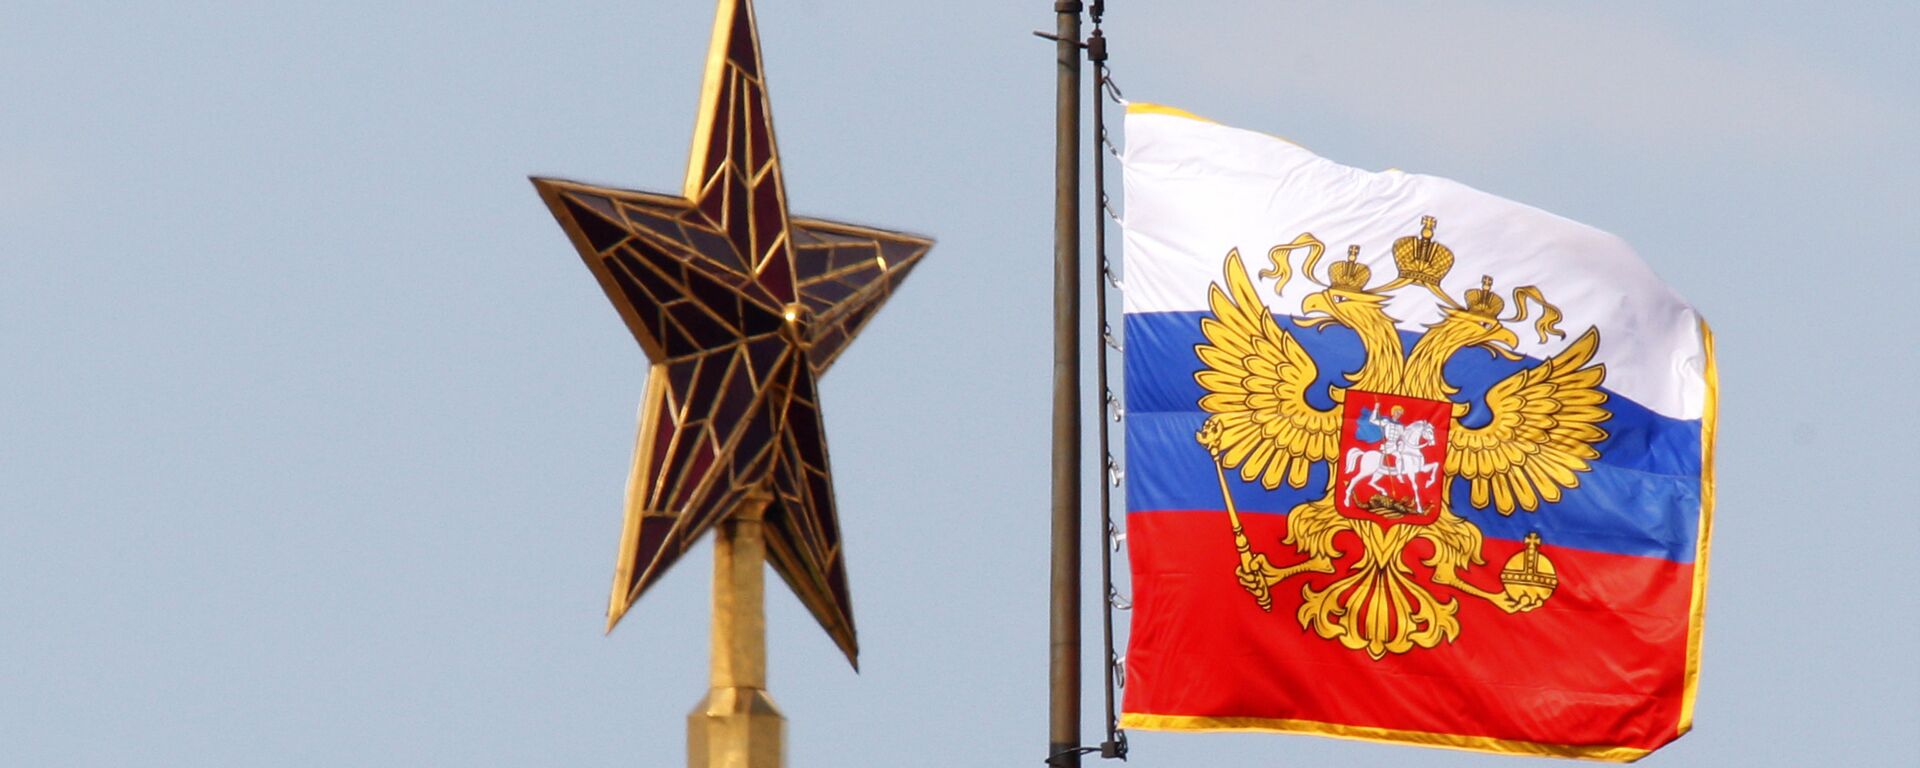 El estandarte (bandera) del presidente de la Federación de Rusia - Sputnik Mundo, 1920, 16.04.2021